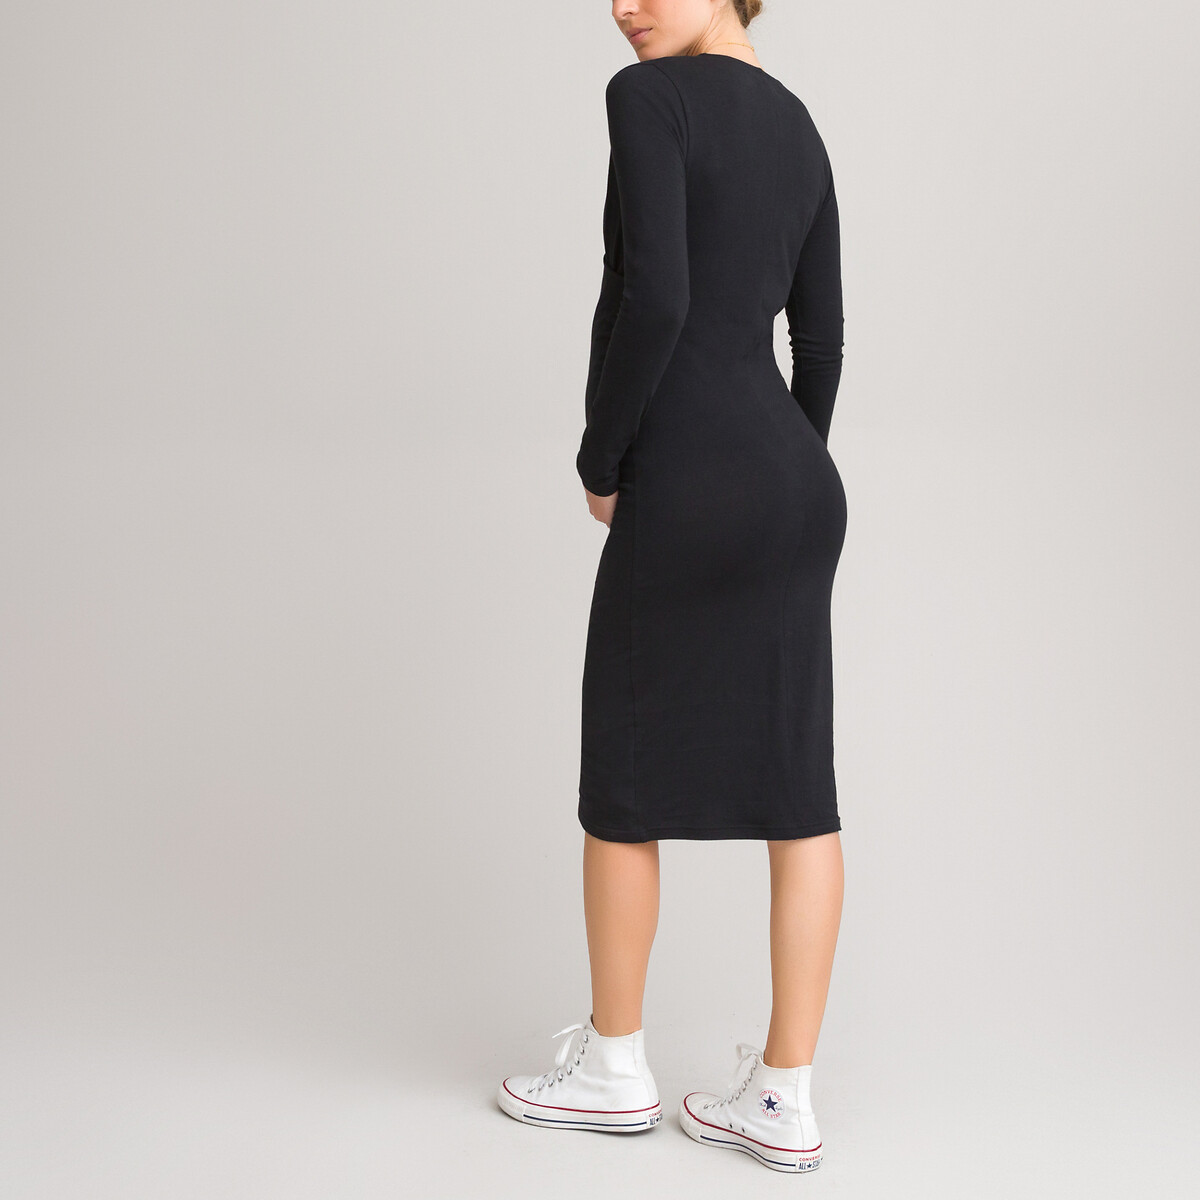 Платье LaRedoute Для периода беременности из трикотажа в форме с запахом S черный, размер S - фото 4